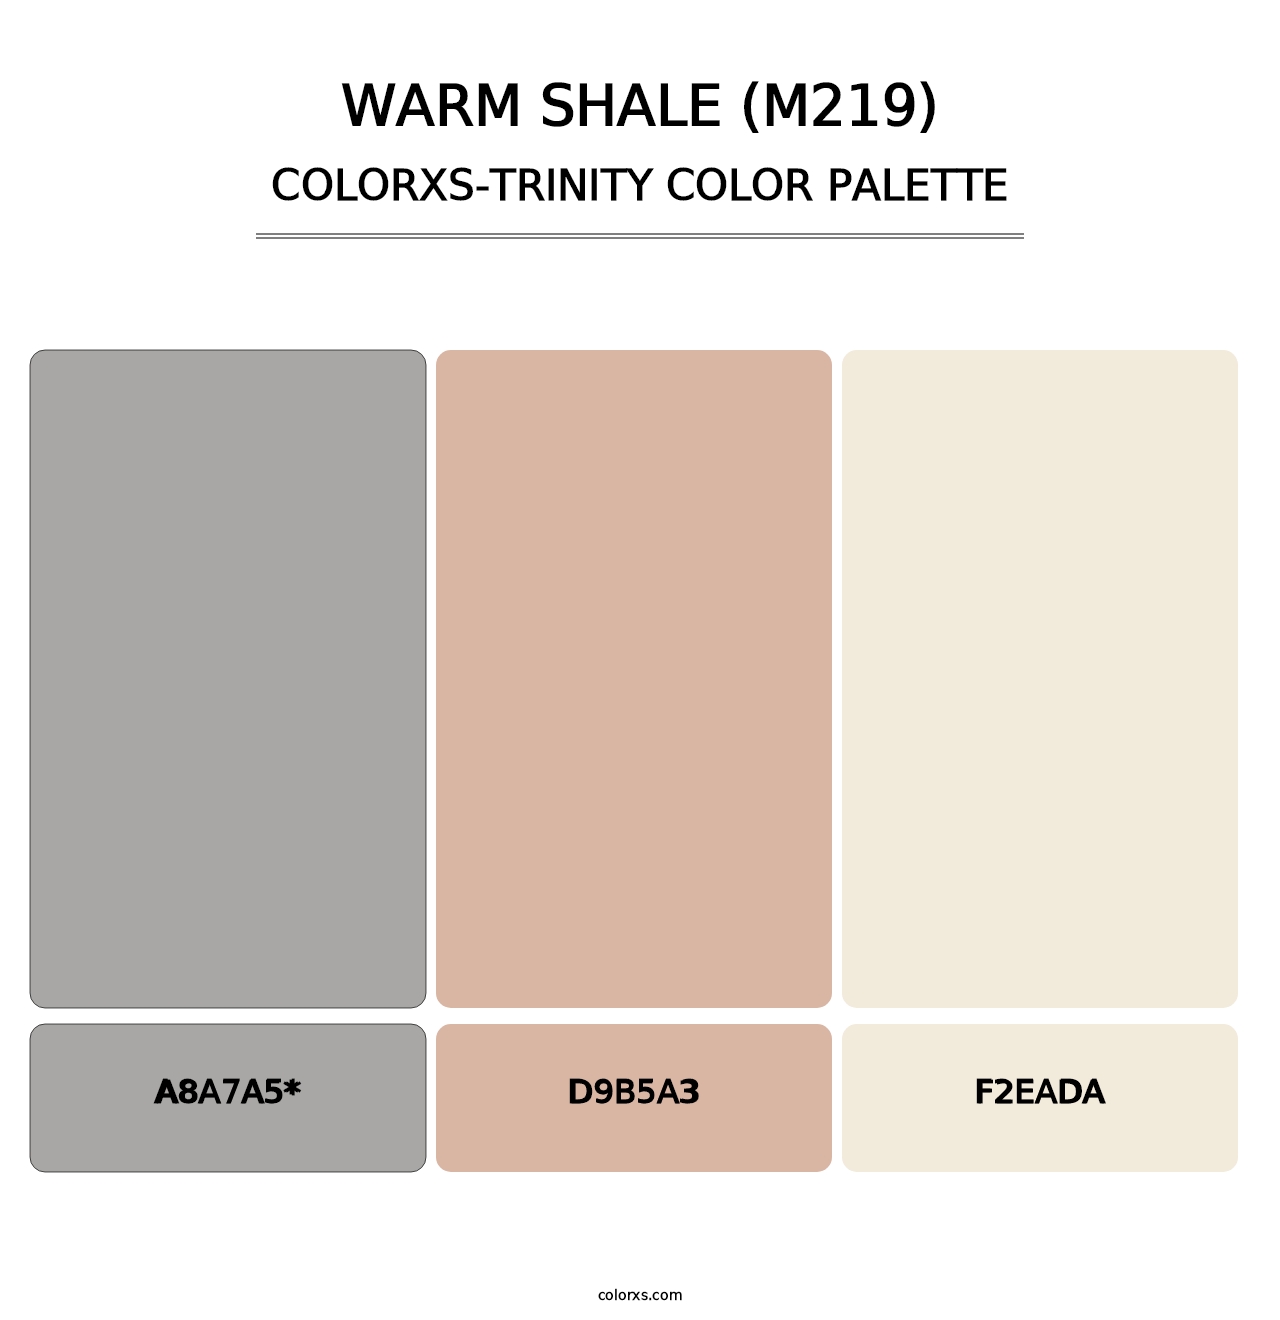 Warm Shale (M219) - Colorxs Trinity Palette